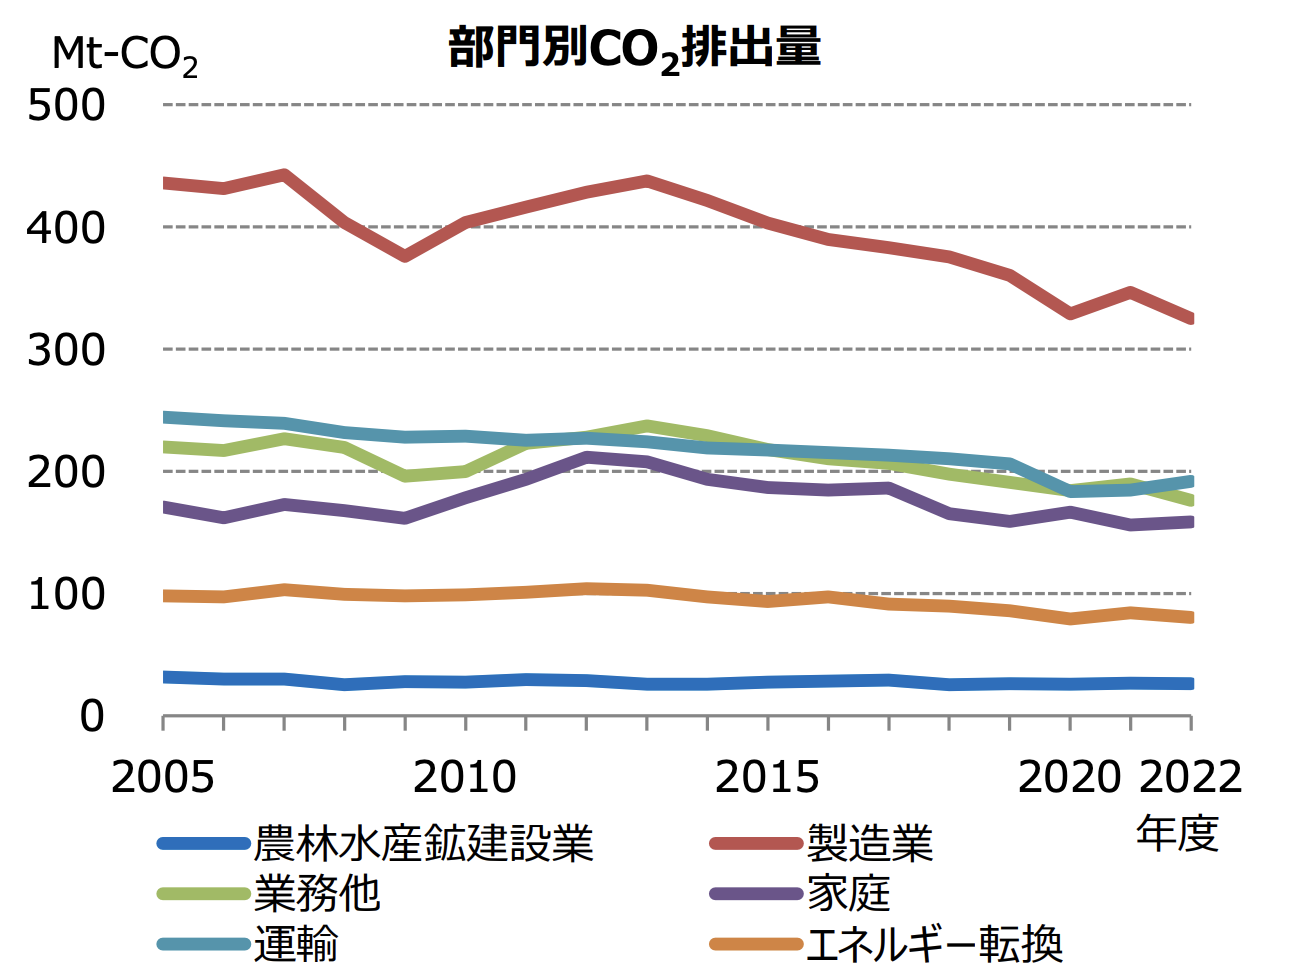 2022年度エネルギー需給実績 製造業のエネルギー消費・CO2排出量は着実に減少 10年前からエネルギー消費18.2%減、CO2排出量も25.8%減